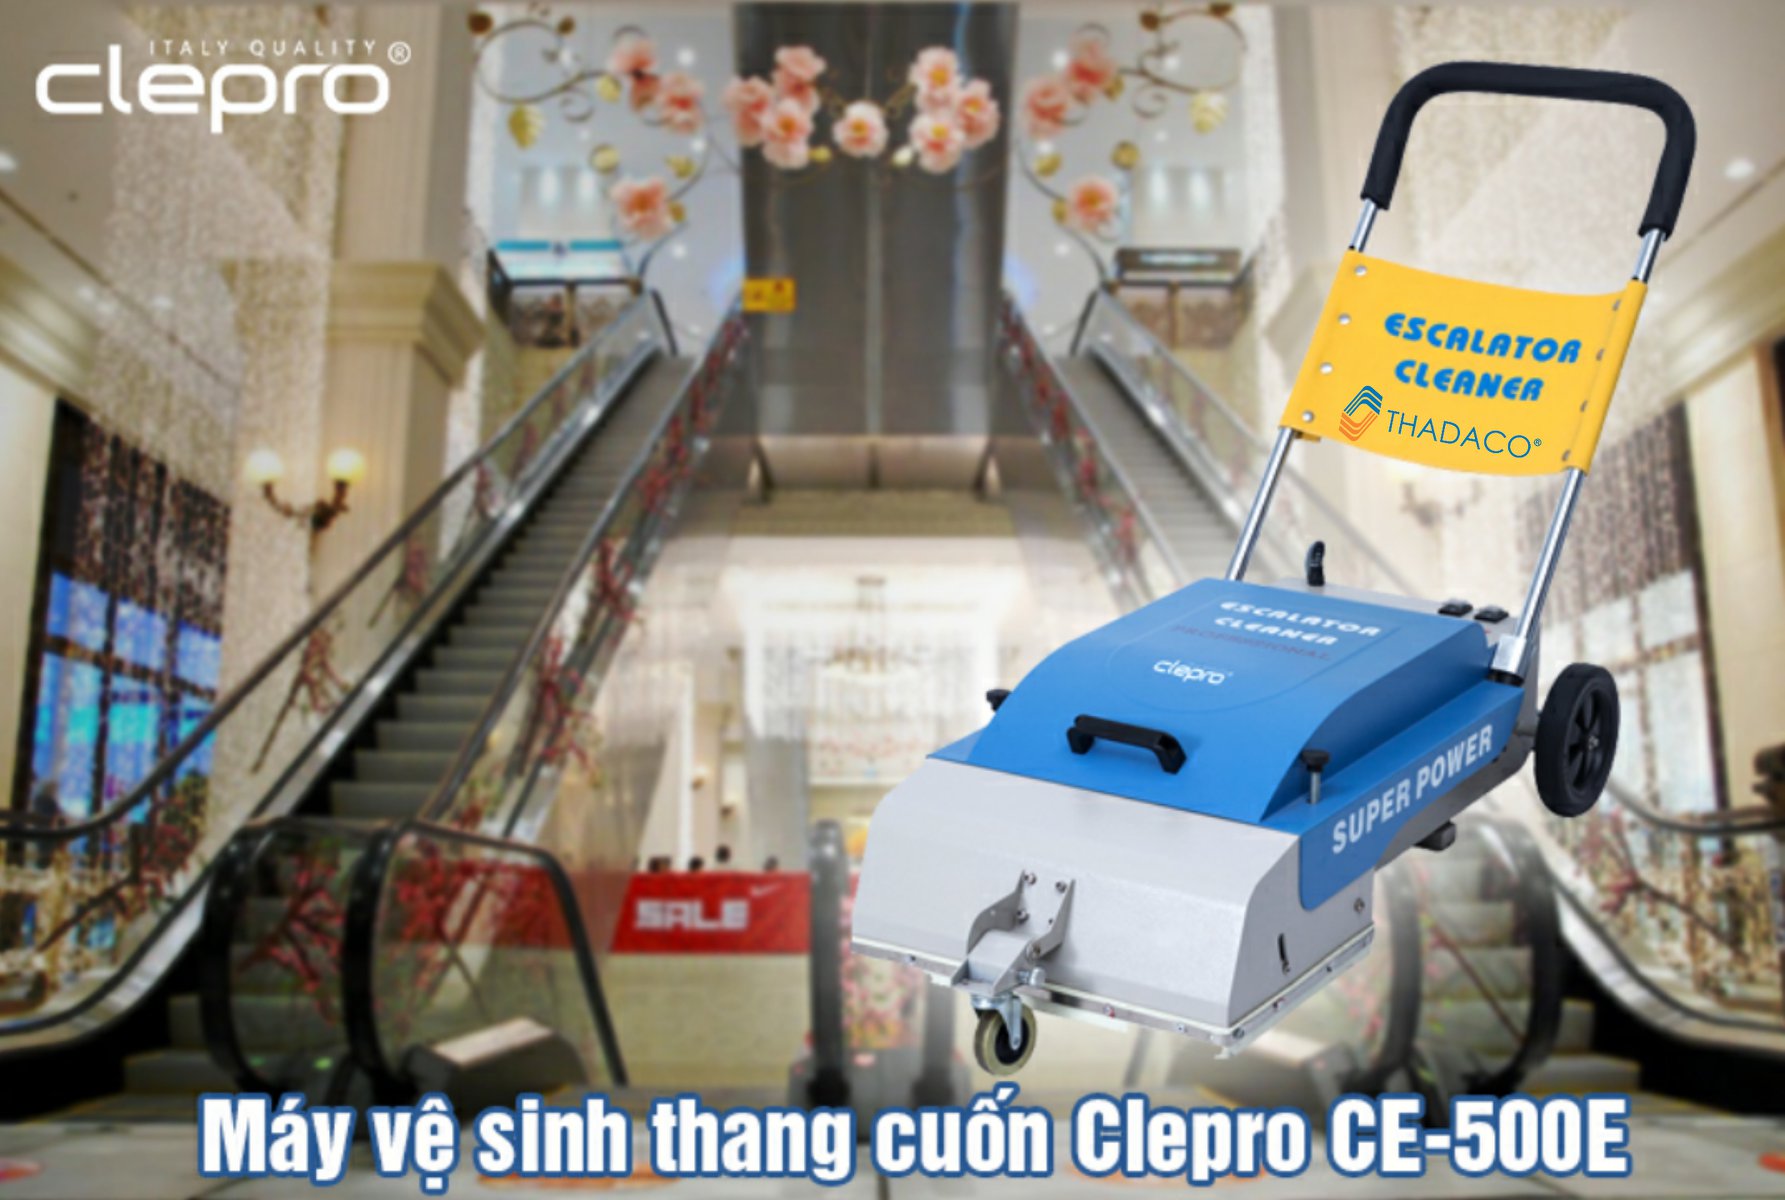 Clepro-ce-500e